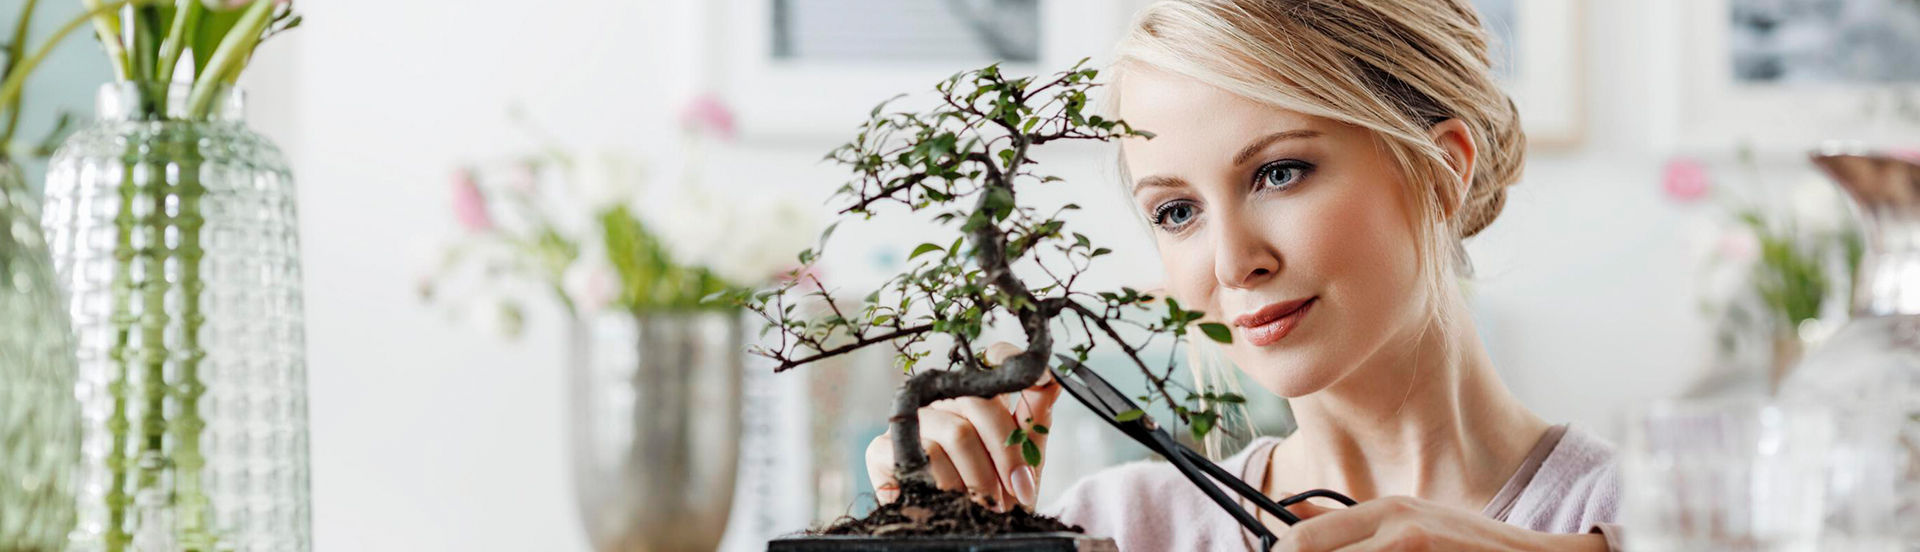 Header Blog mit Frau die einen Bonsaibaum schneidet